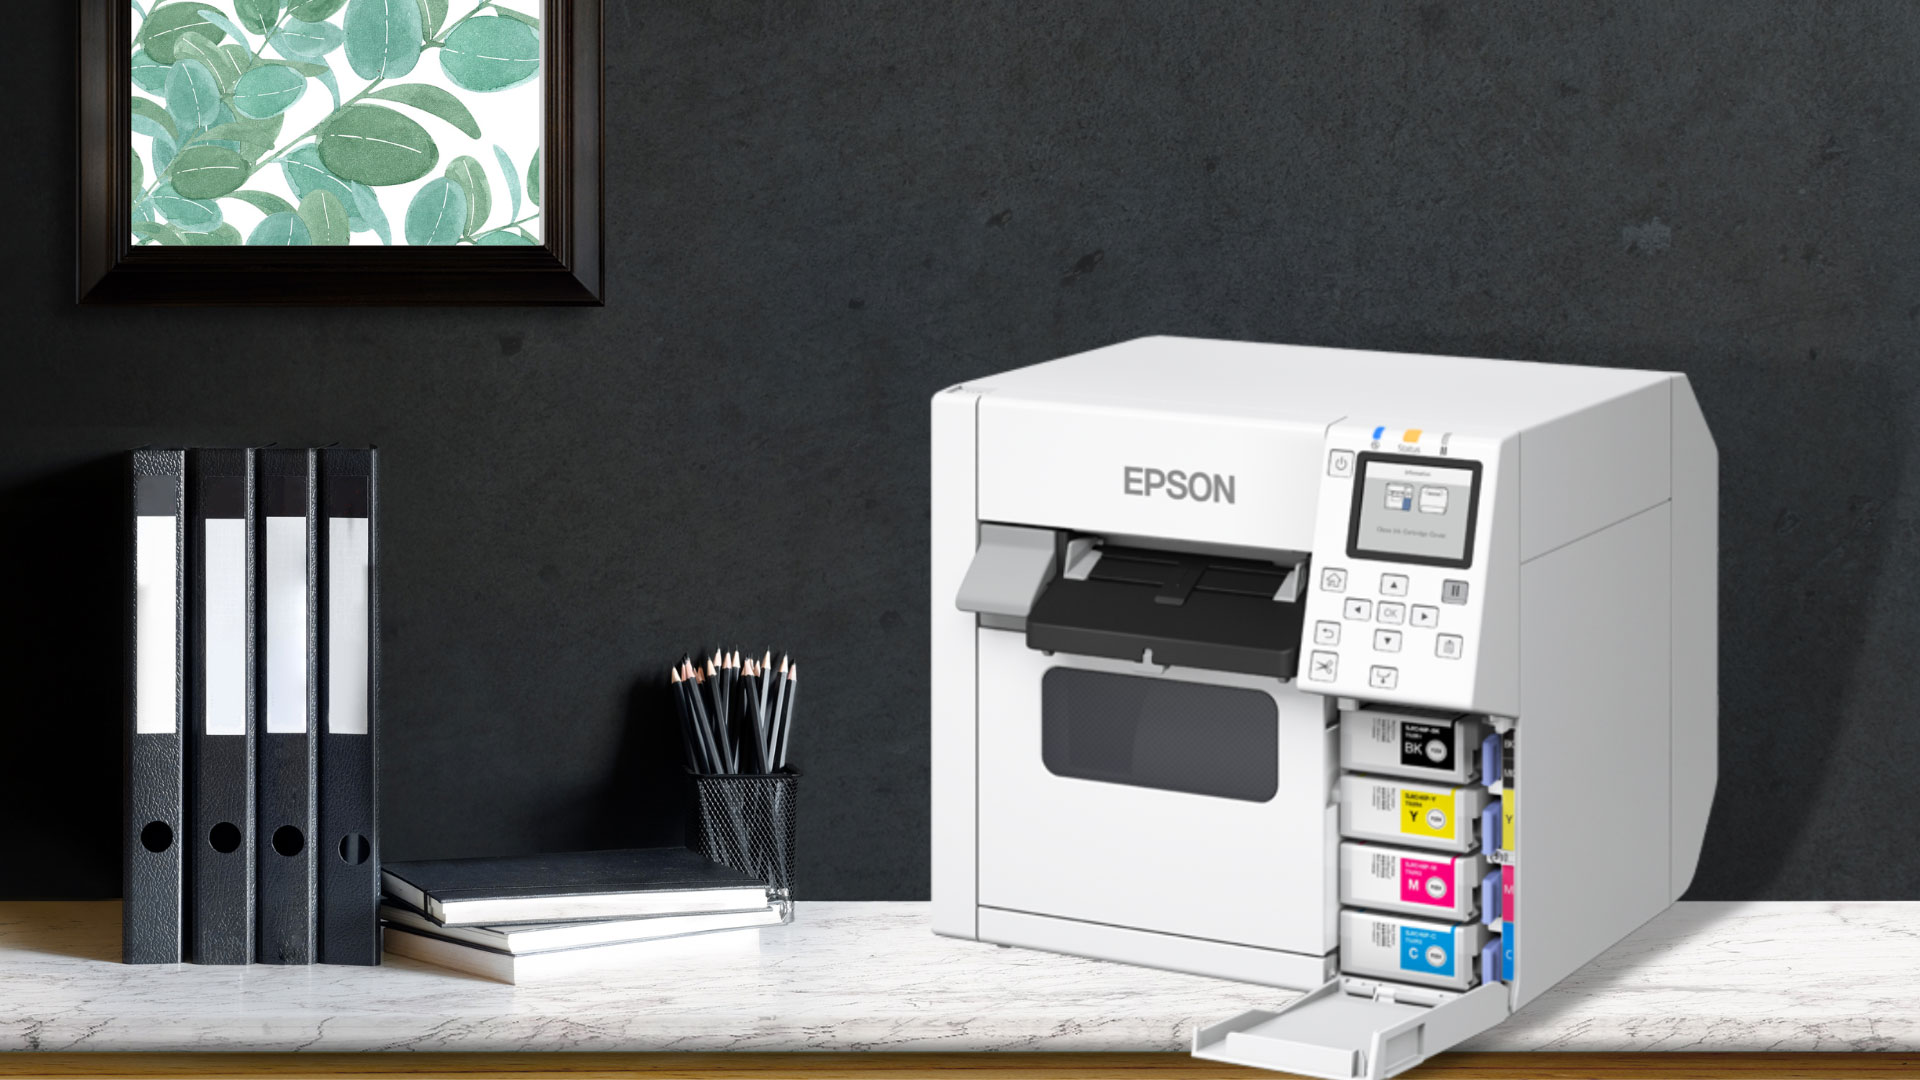 Epson ra mắt máy in màu phổ thông mới hướng đến doanh nghiệp đang phát triển chuỗi sản xuất